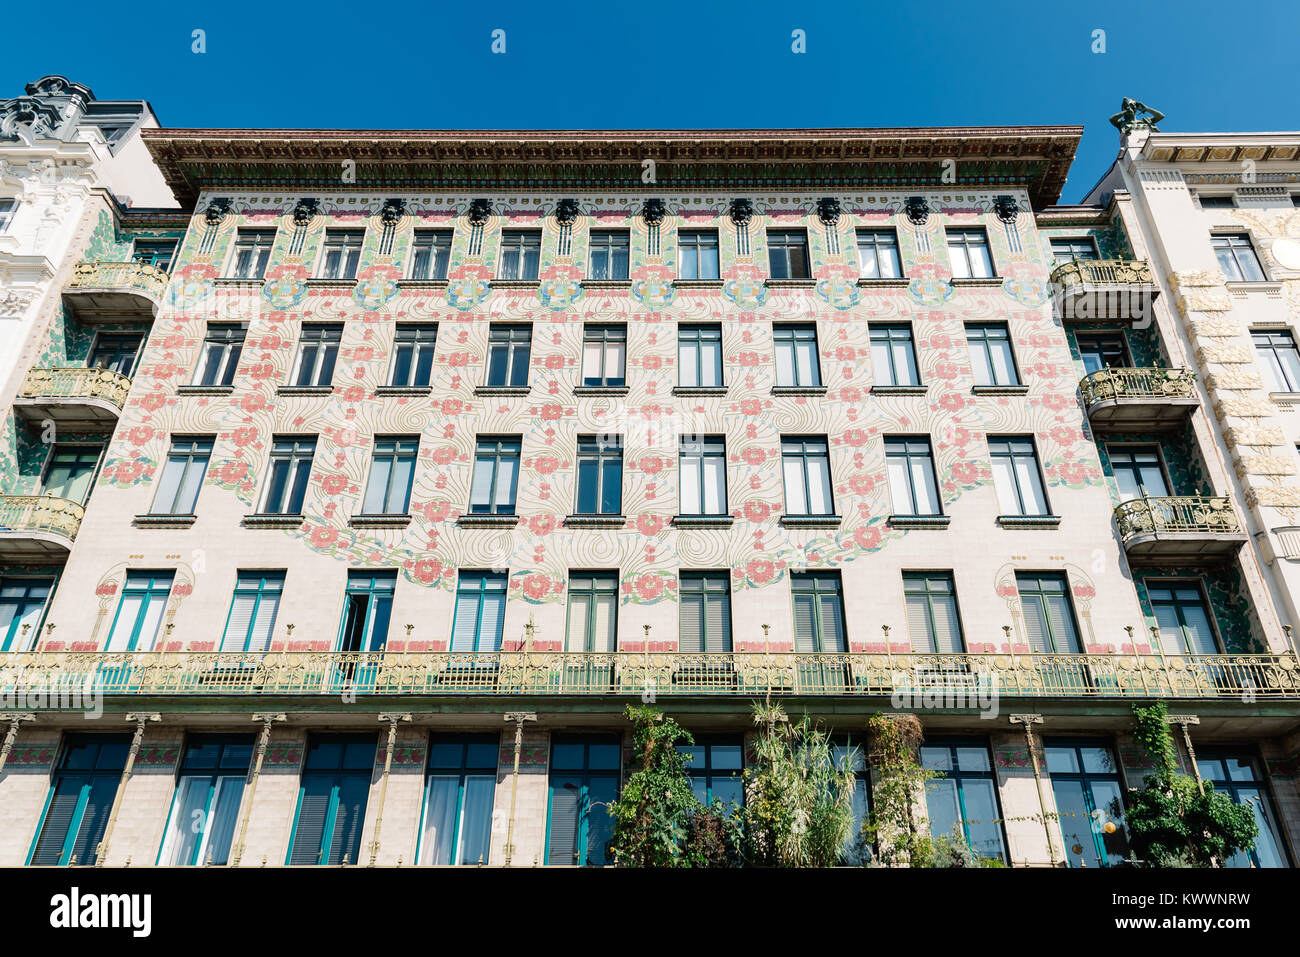 Vienna, Austria - Agosto 17, 2017: Majolikahaus, Maioliche House Apartment House progettata dall architetto Otto Wagner in stile secessione. Foto Stock